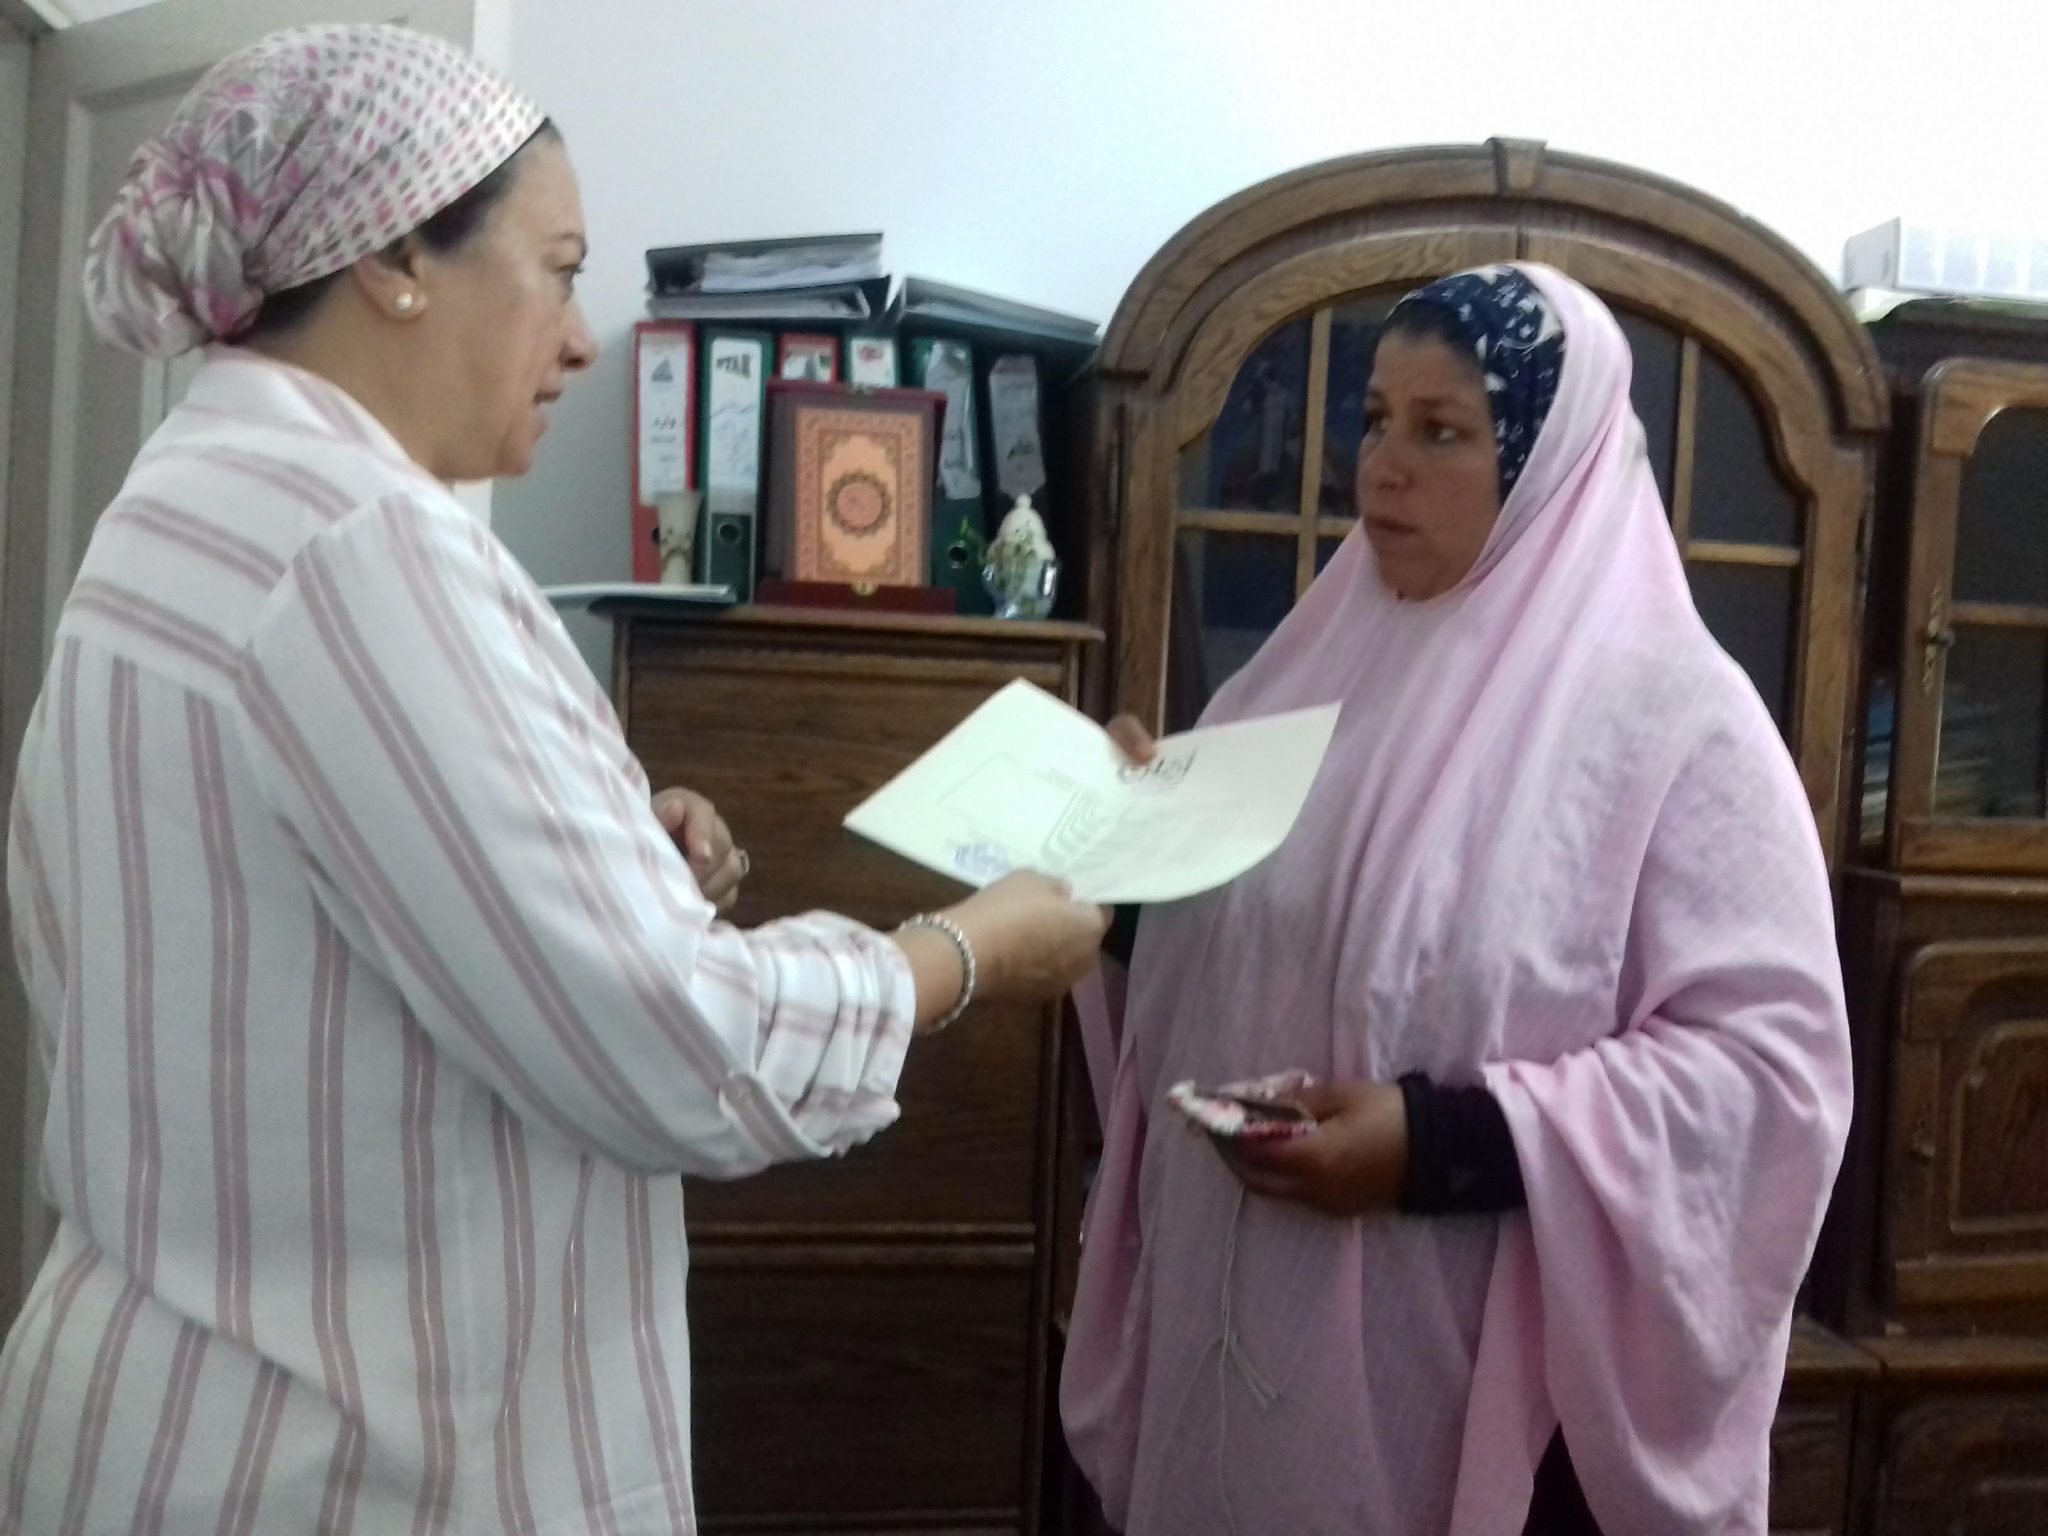   تسليم 700 شهادة امان لسيدات القرى الاكثر احتياجا بالاسكندرية